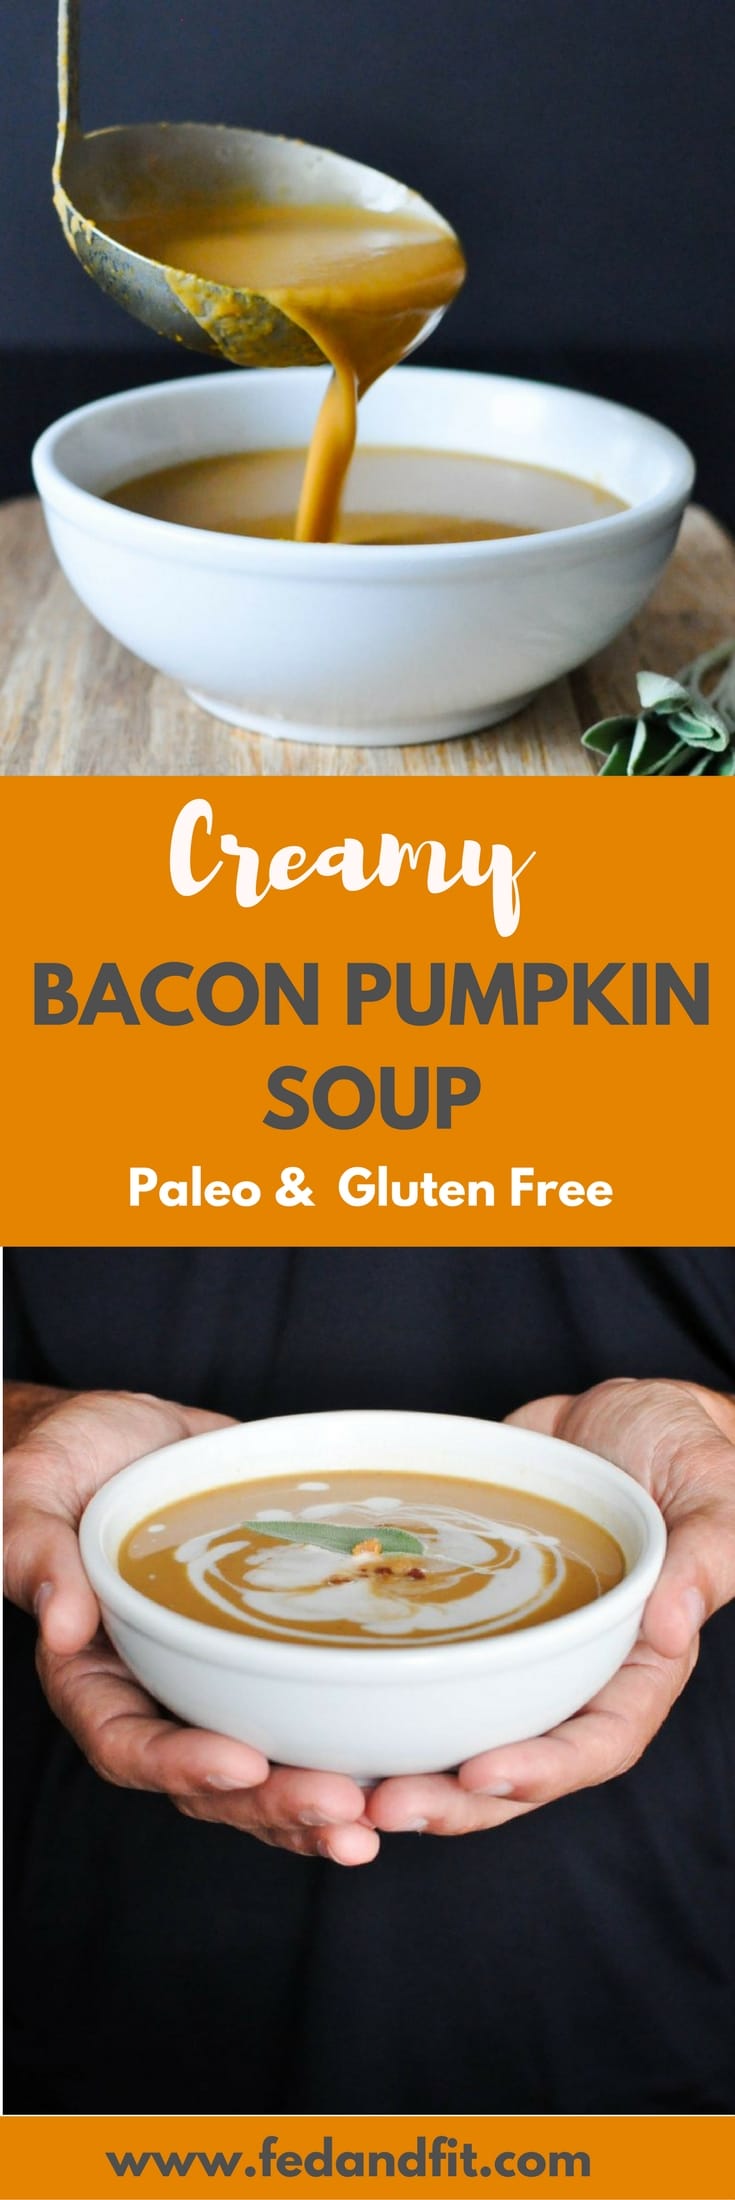 denne Paleo Bacon græskar suppe er helt mælkefri og lavet cremet med kokosmælk. Det er det perfekte sunde og trøstende vintermåltid, der stadig føles overbærende!